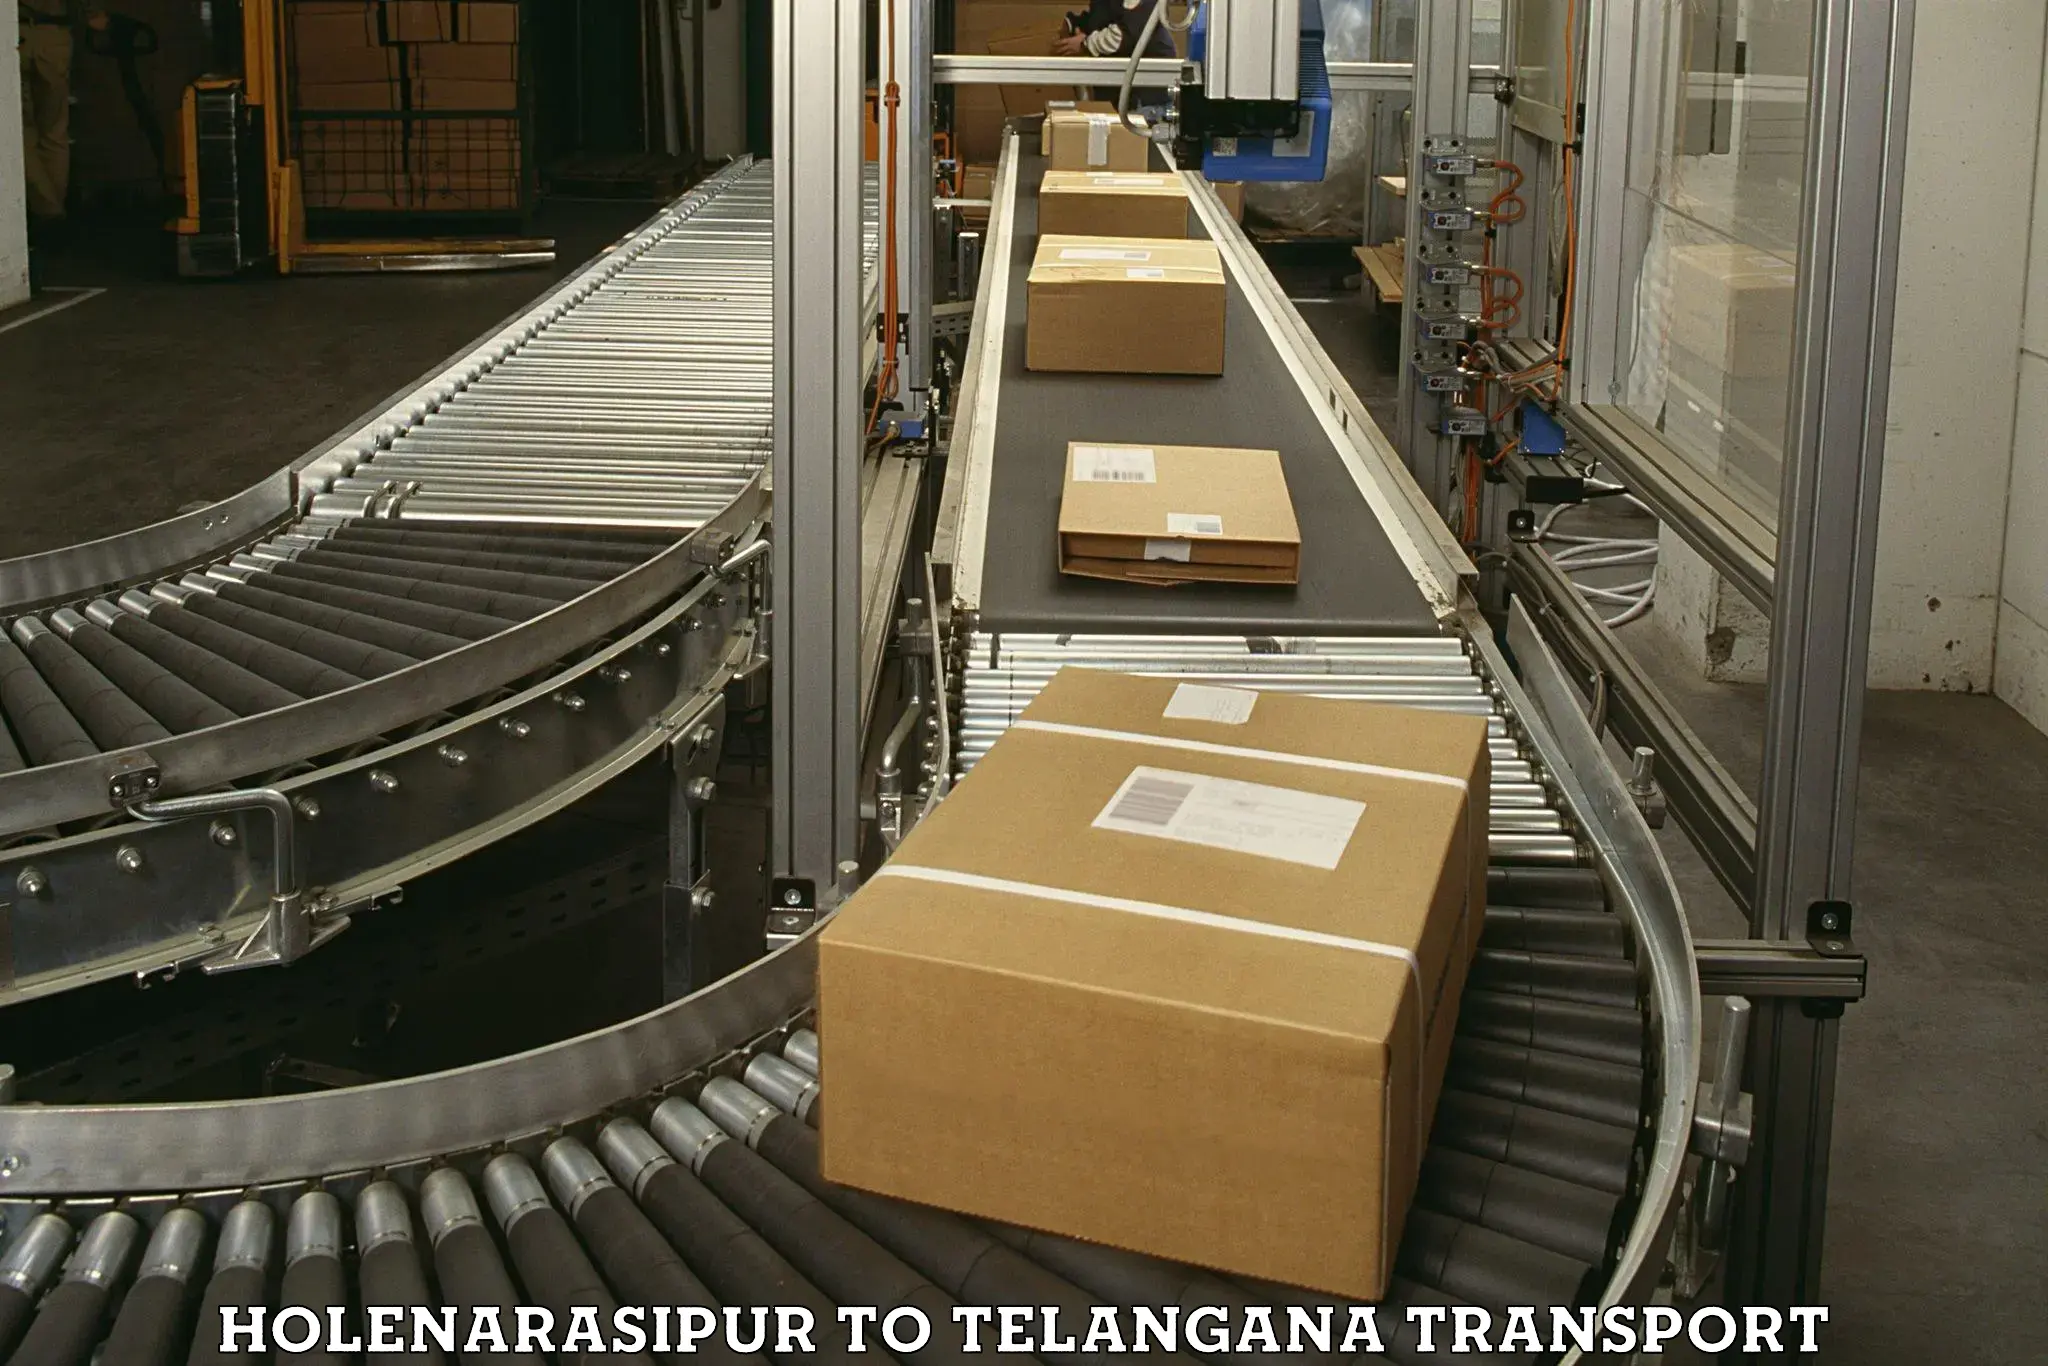 Nationwide transport services Holenarasipur to Telangana